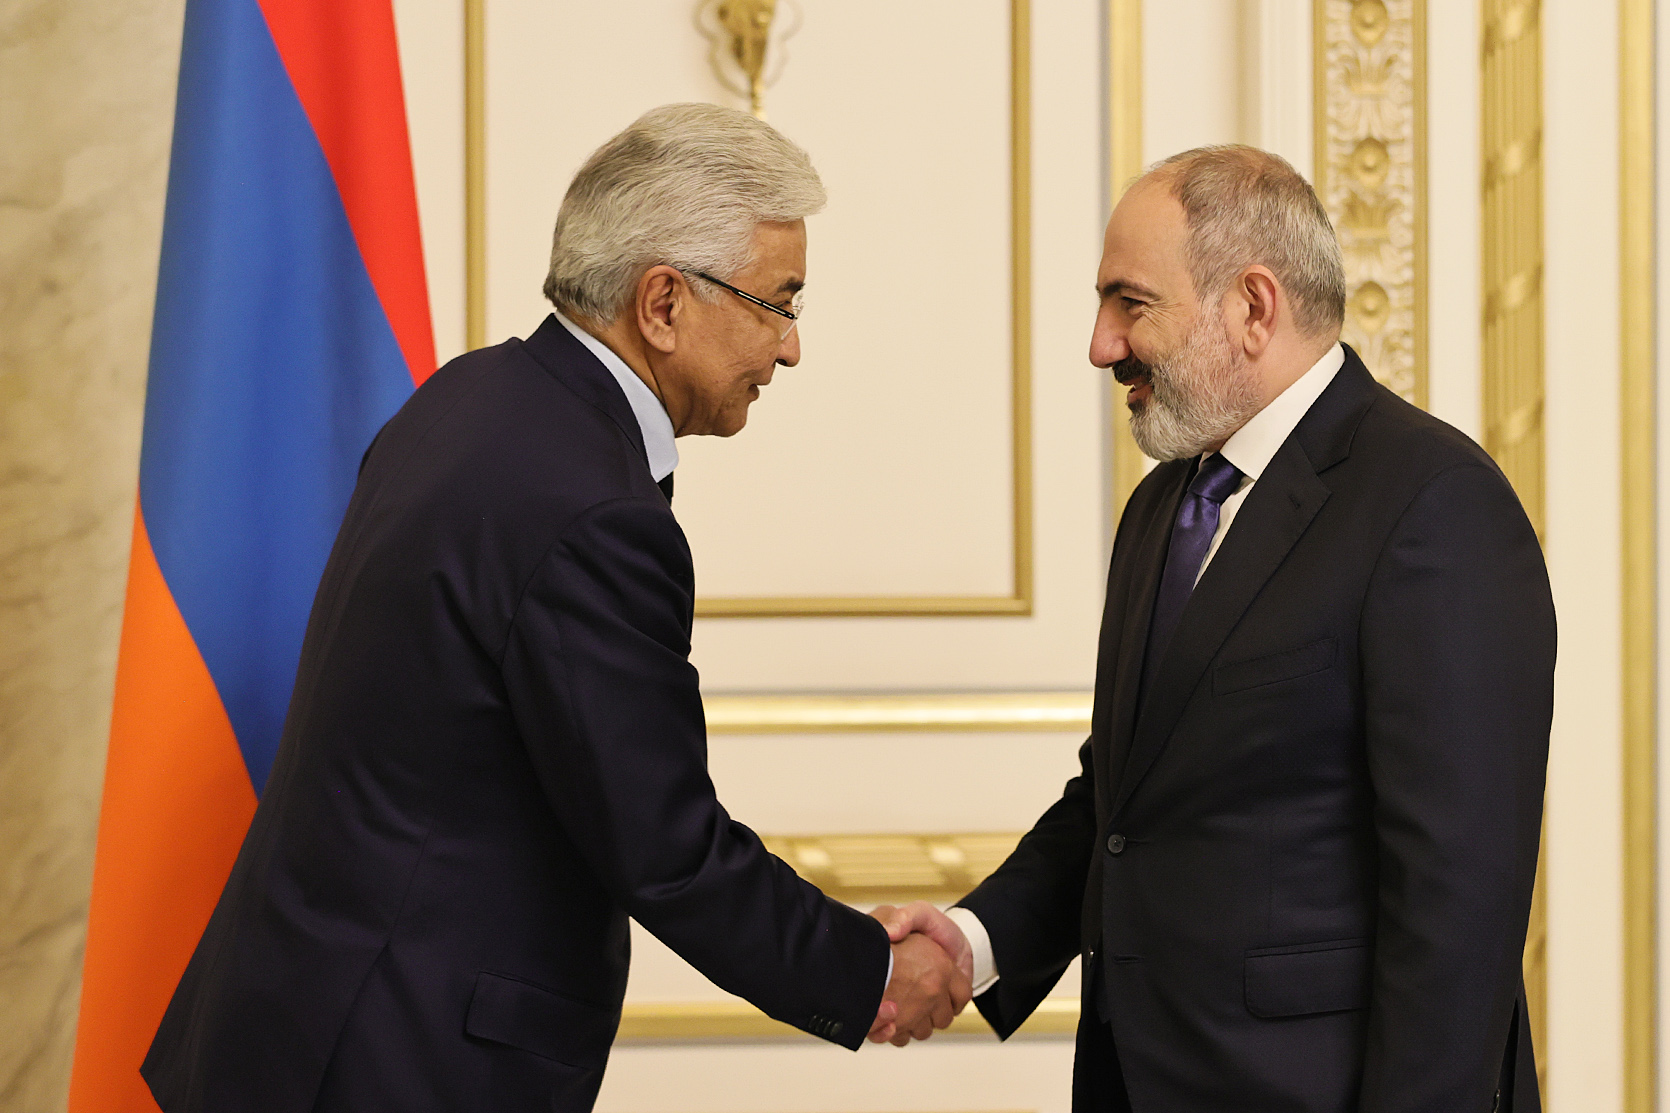 ՀԱՊԿ-ը հույս ունի, որ Հայաստանի իշխանությունները կազմակերպության նկատմամբ  քաղաքական սթափություն կդրսևորեն․ Տասմագամբետով